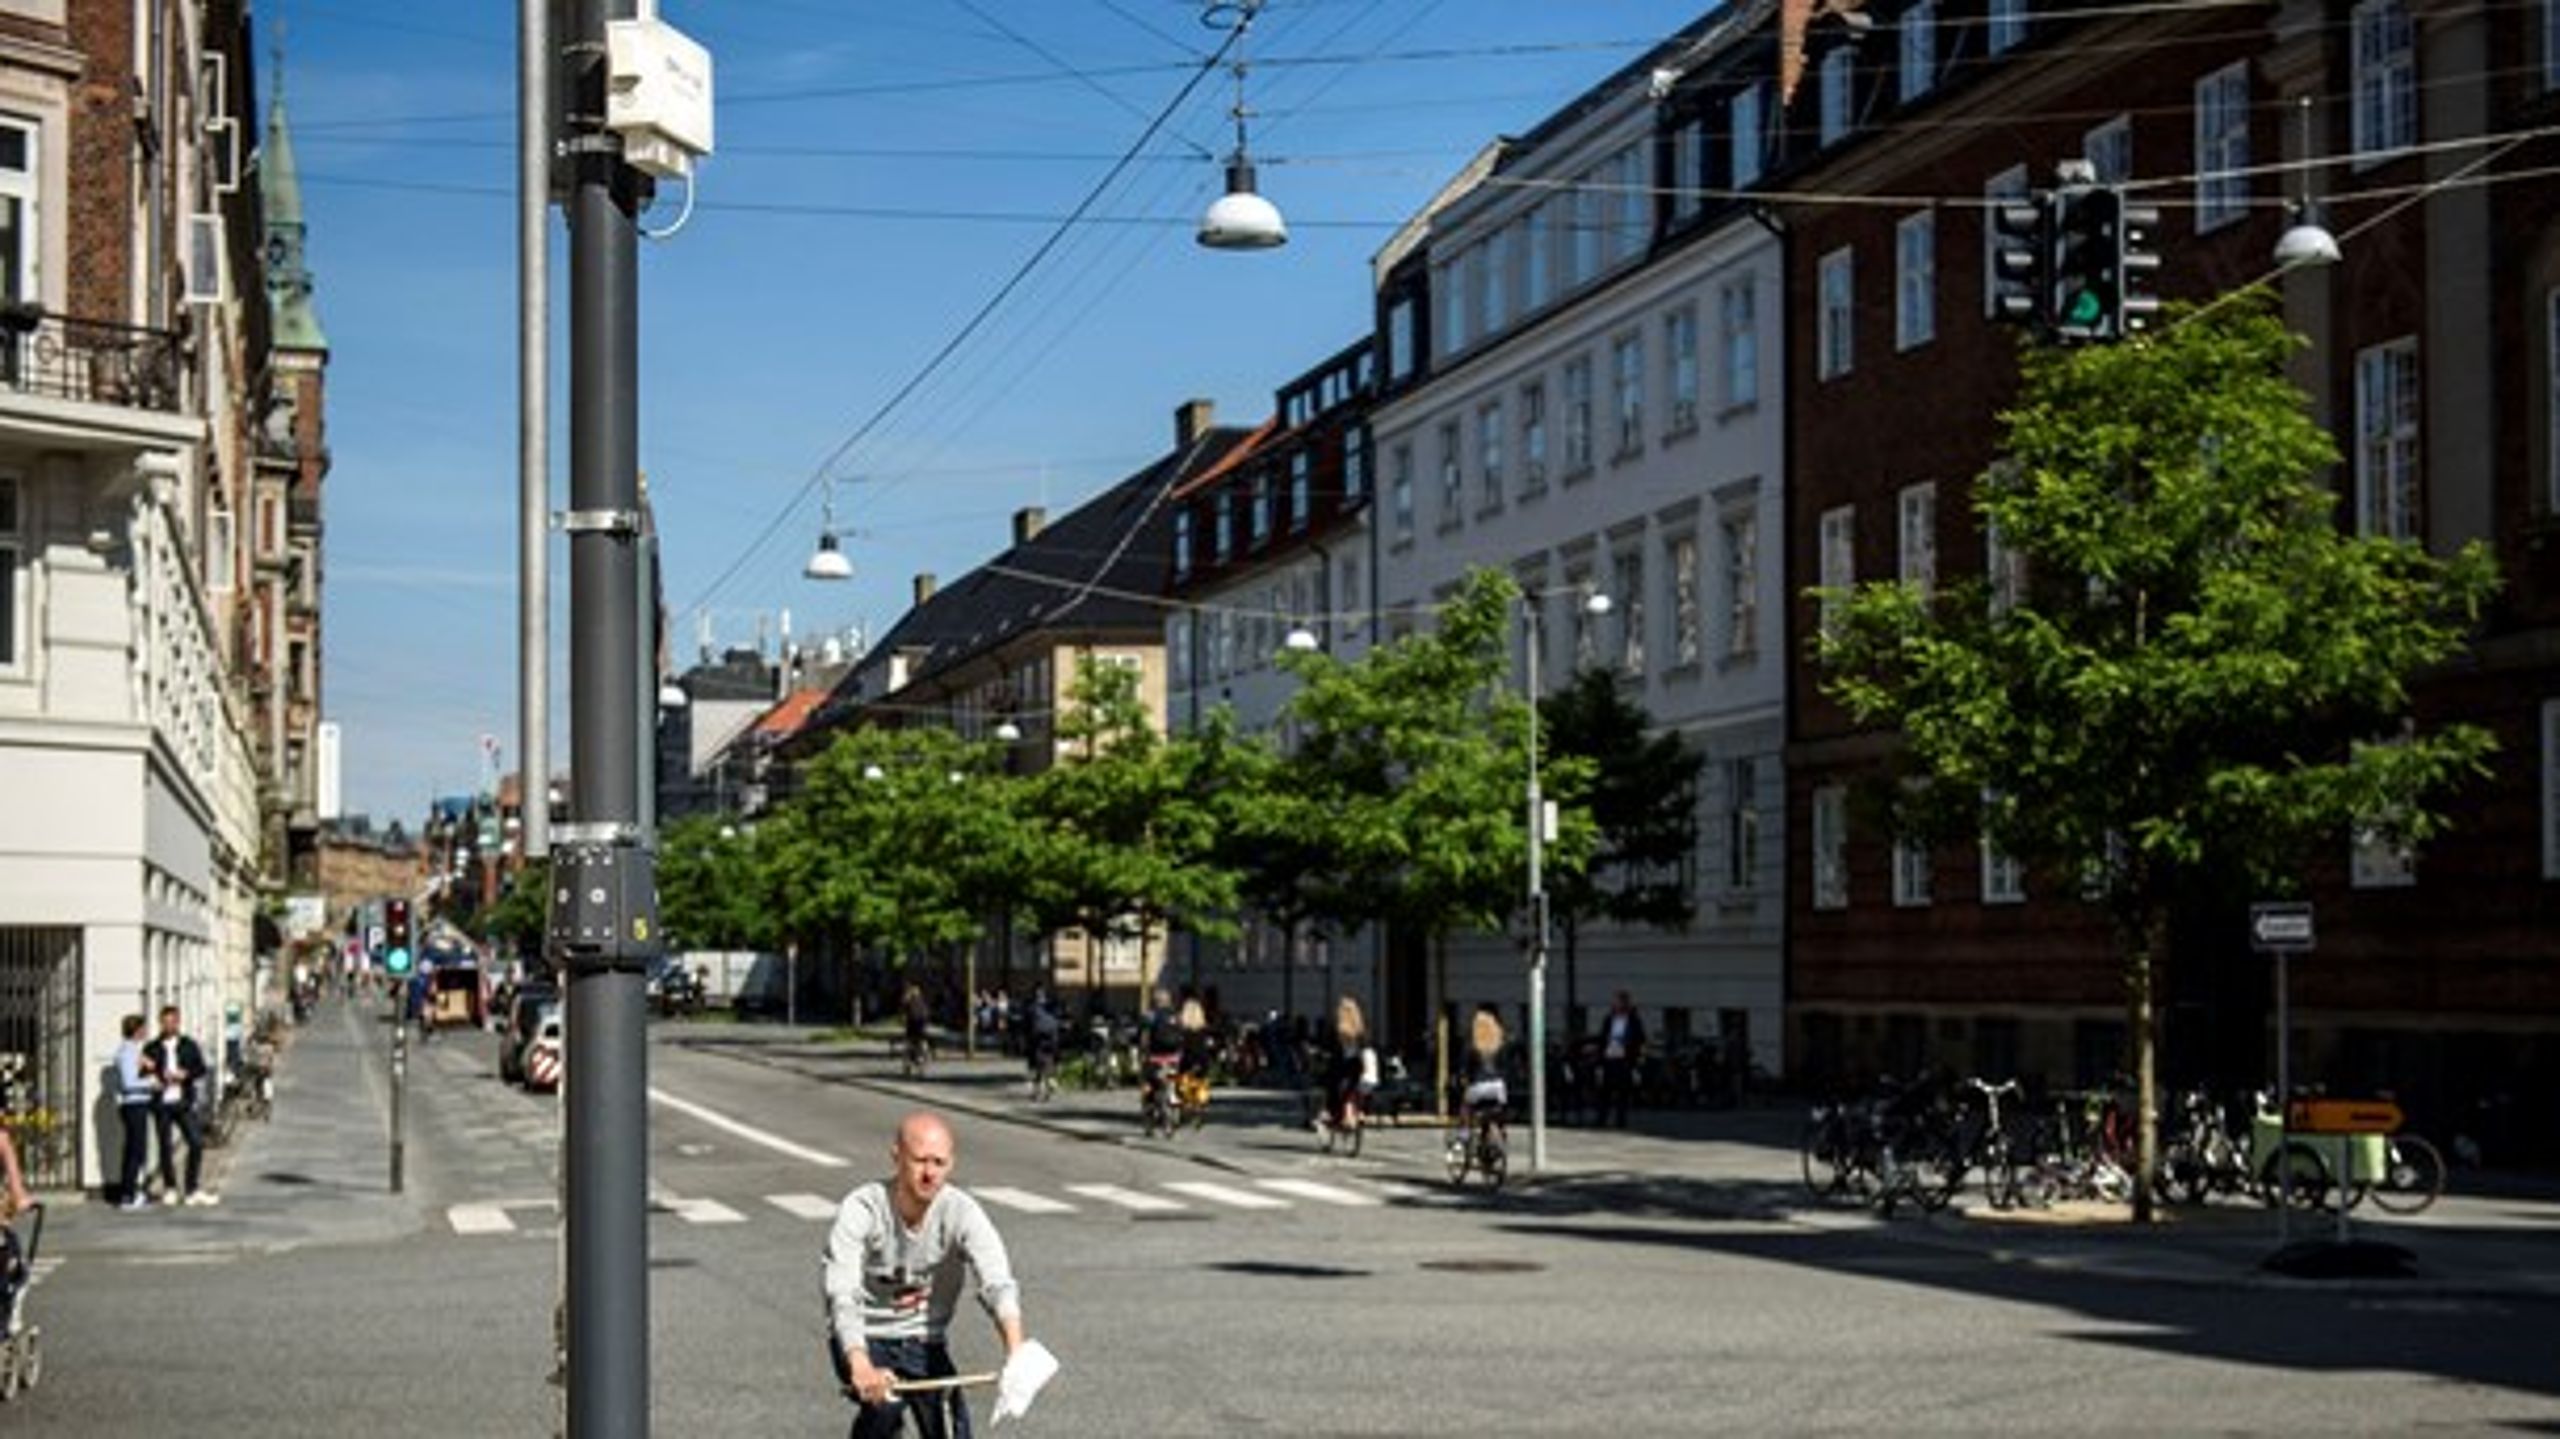 Æraen for smart cities med wifi i lygtpæle, intelligente parkeringspladser, skraldespande, der sms'er, og luftsensorer rykker ind i Danmark, men der er behov for fælles rammer i kommuner, mener Fredericia-borgmester.&nbsp;&nbsp;<br>